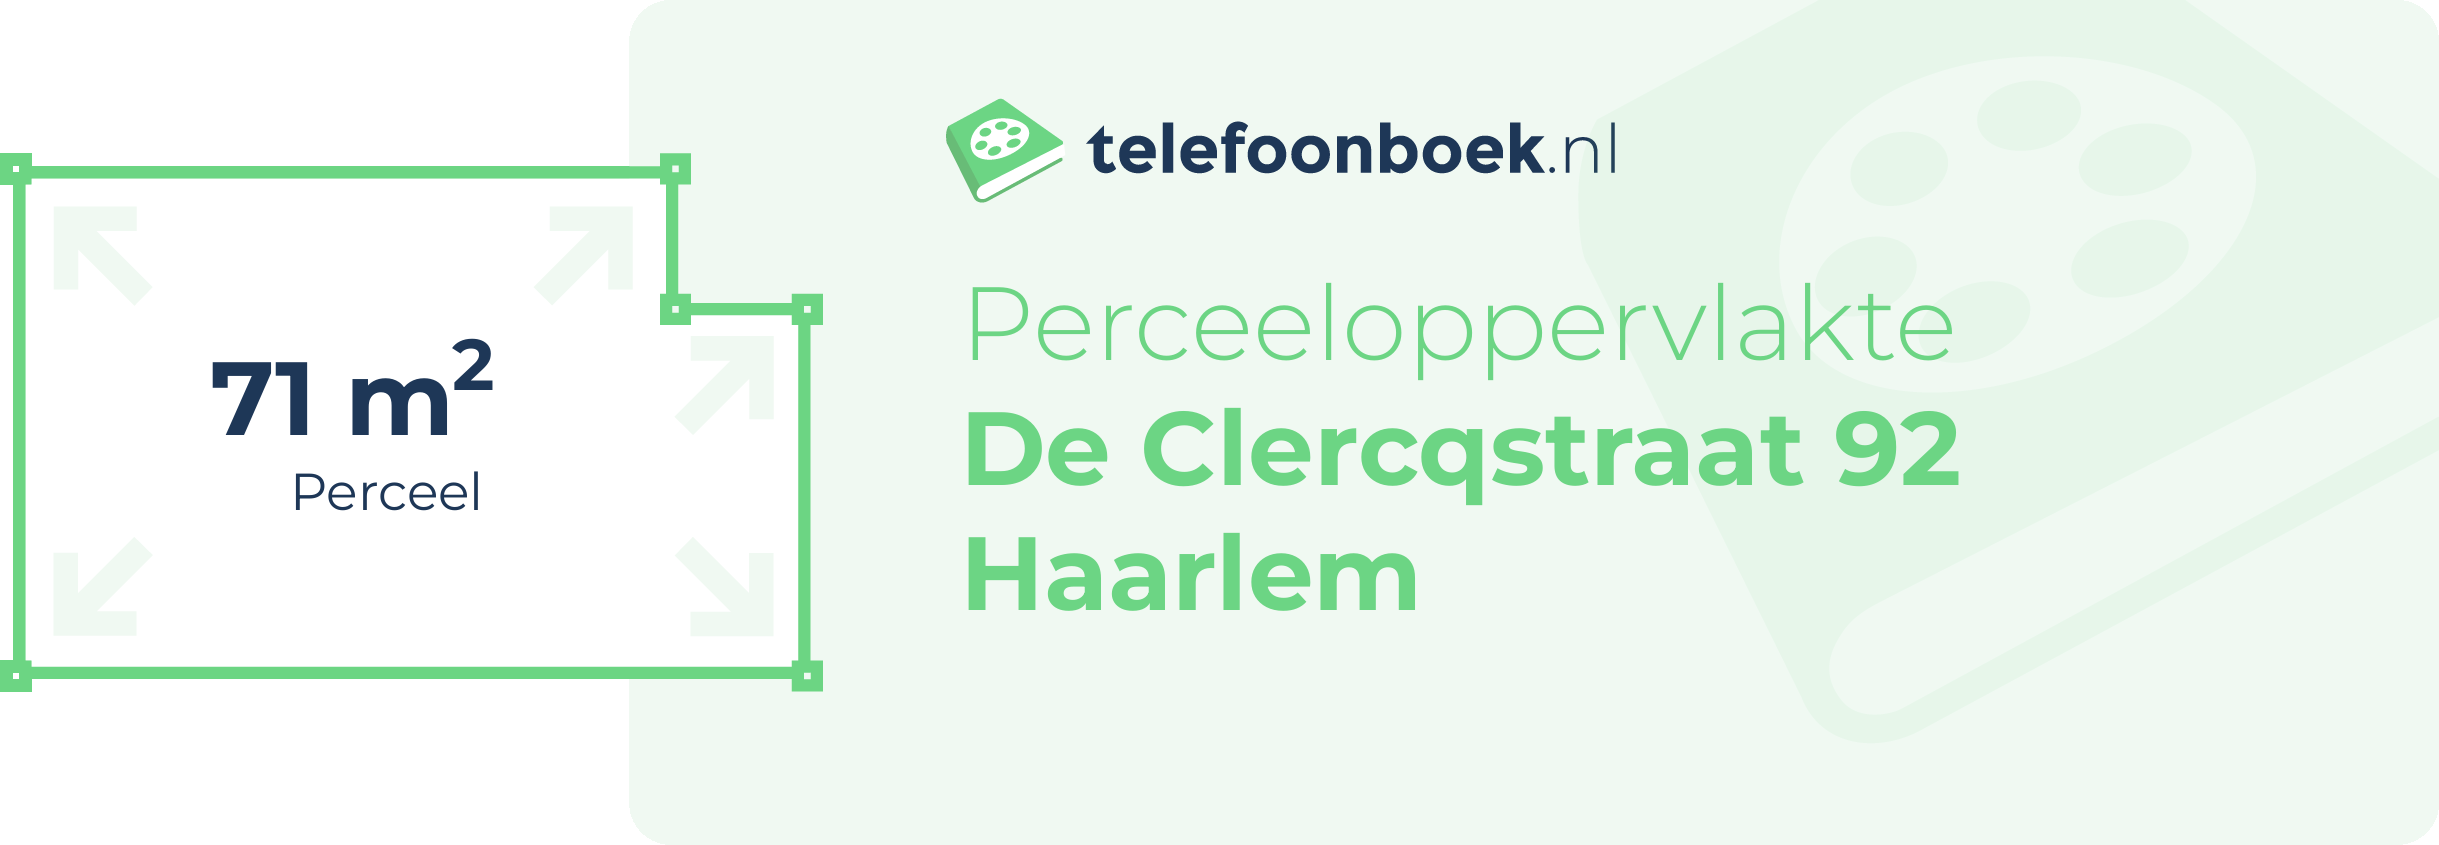 Perceeloppervlakte De Clercqstraat 92 Haarlem